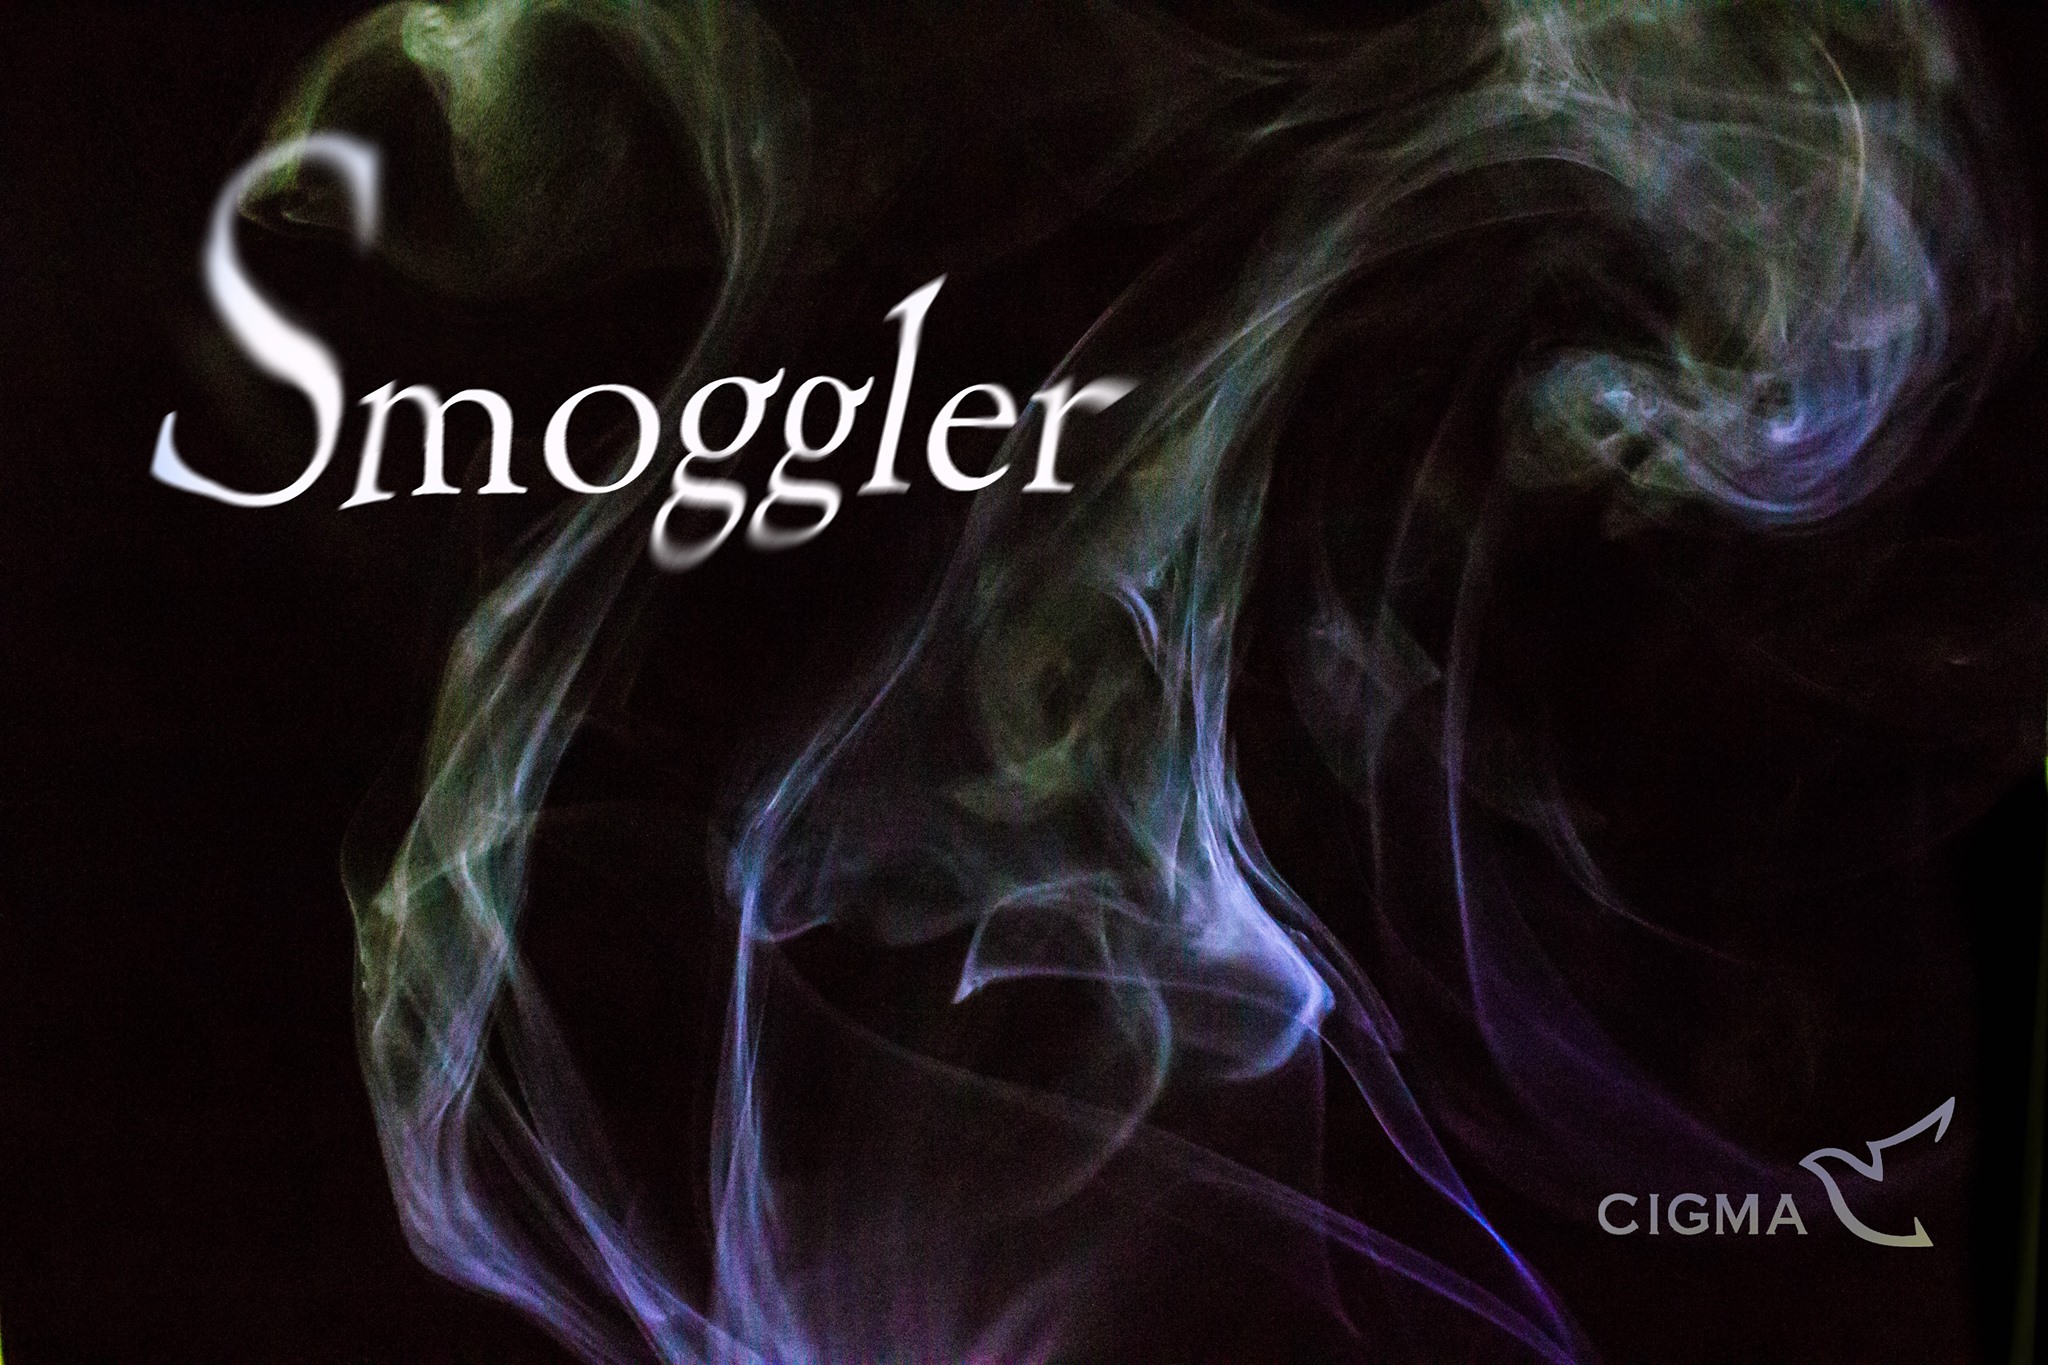 Cigma Magic - Smoggler